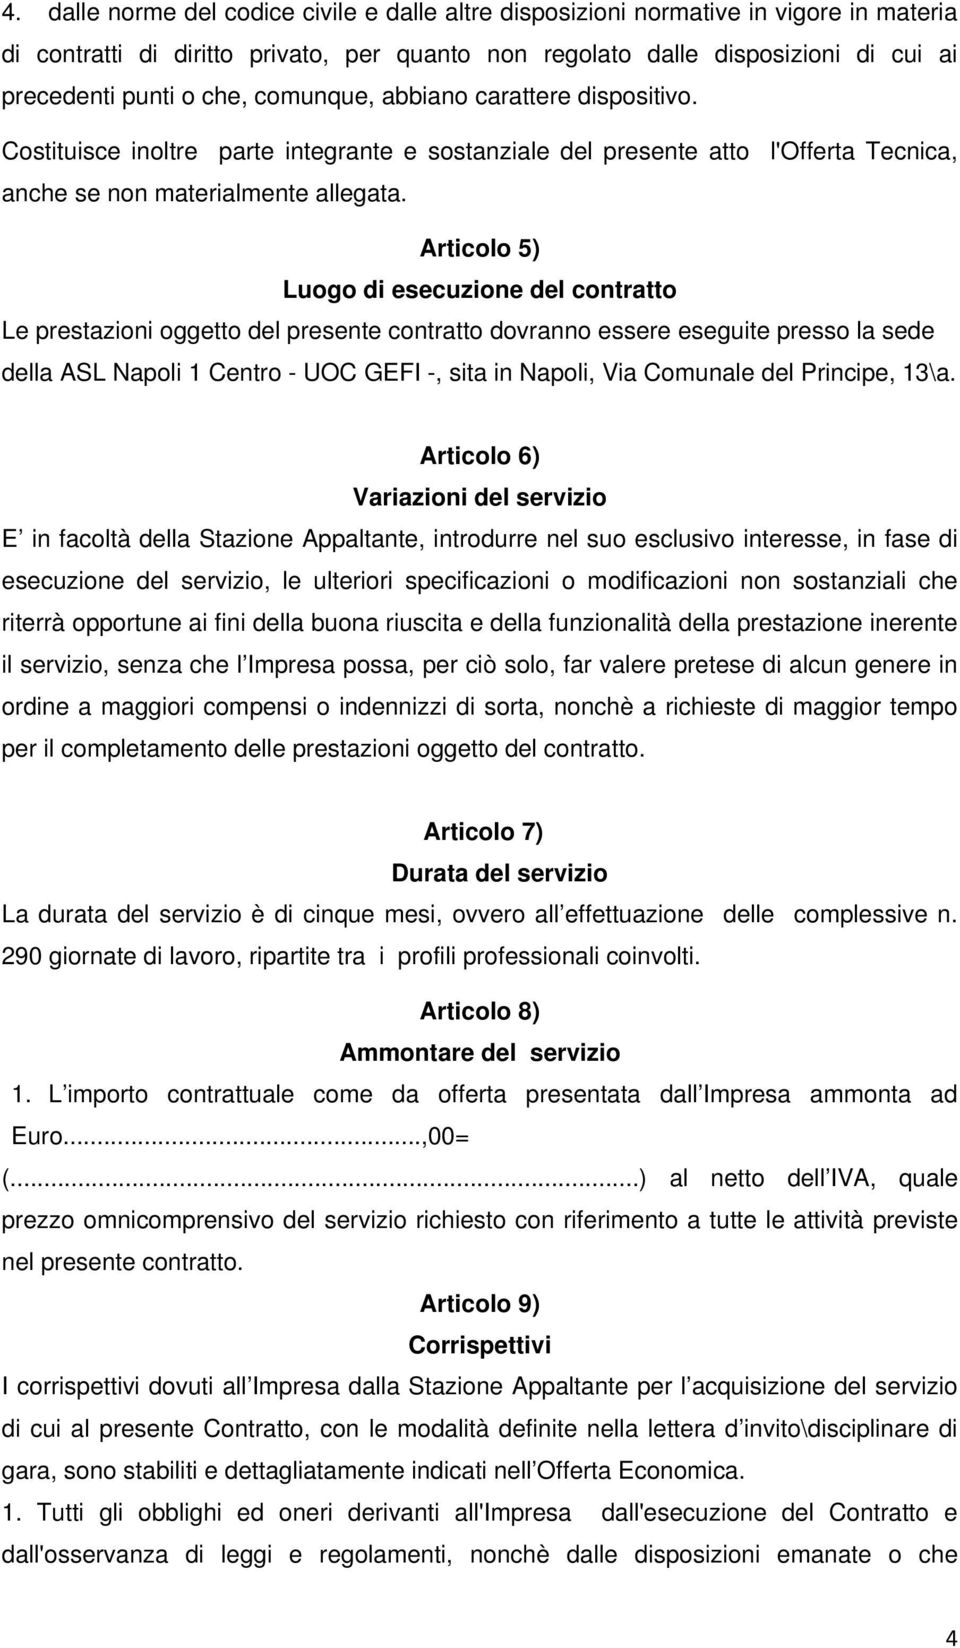 Articolo 5) Luogo di esecuzione del contratto Le prestazioni oggetto del presente contratto dovranno essere eseguite presso la sede della ASL Napoli 1 Centro - UOC GEFI -, sita in Napoli, Via